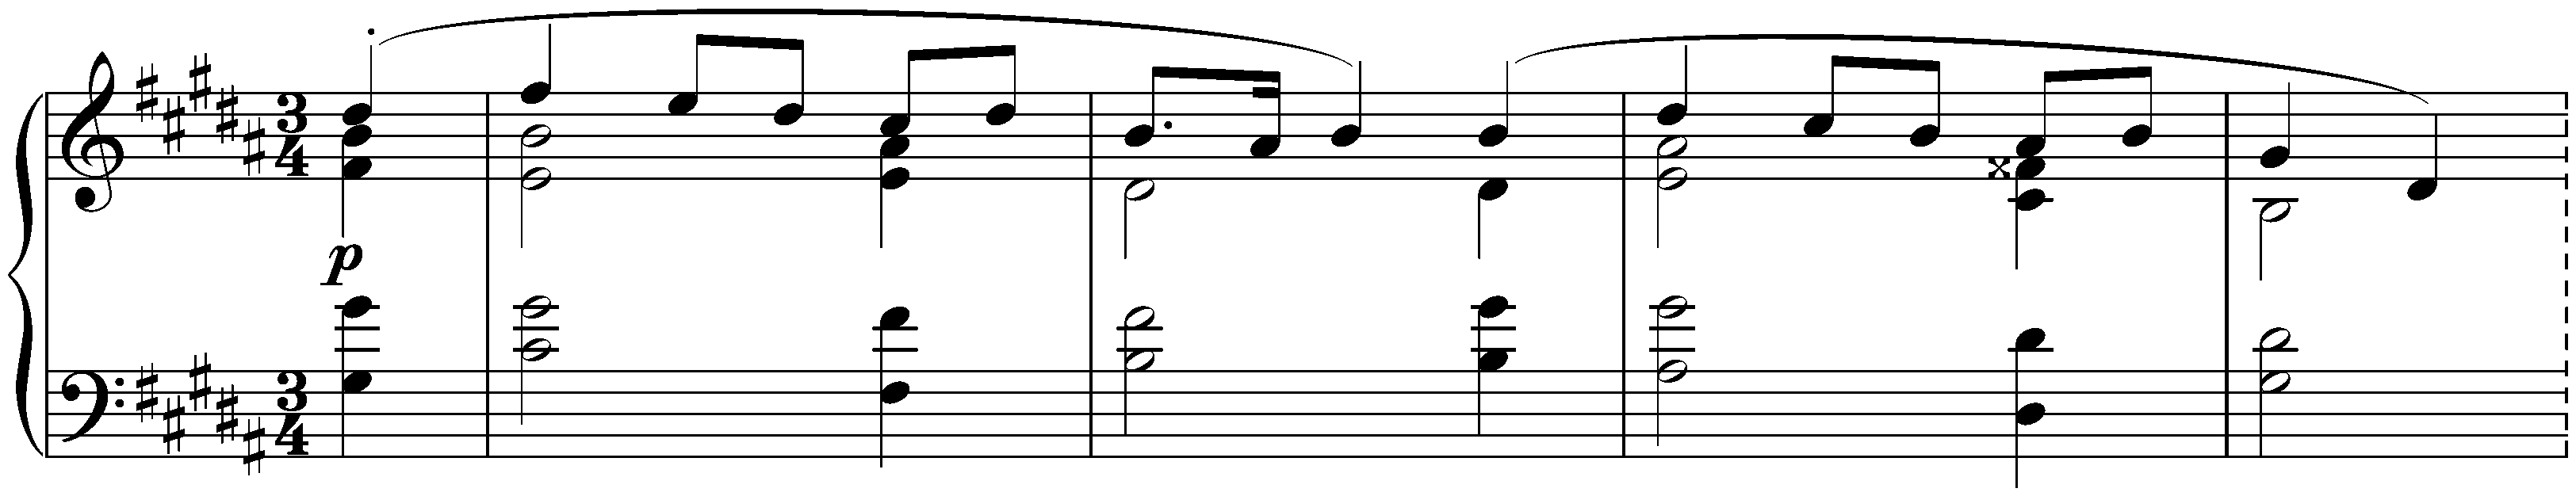 Dix Mazurkas, op. 3; 9. G-sharp minor